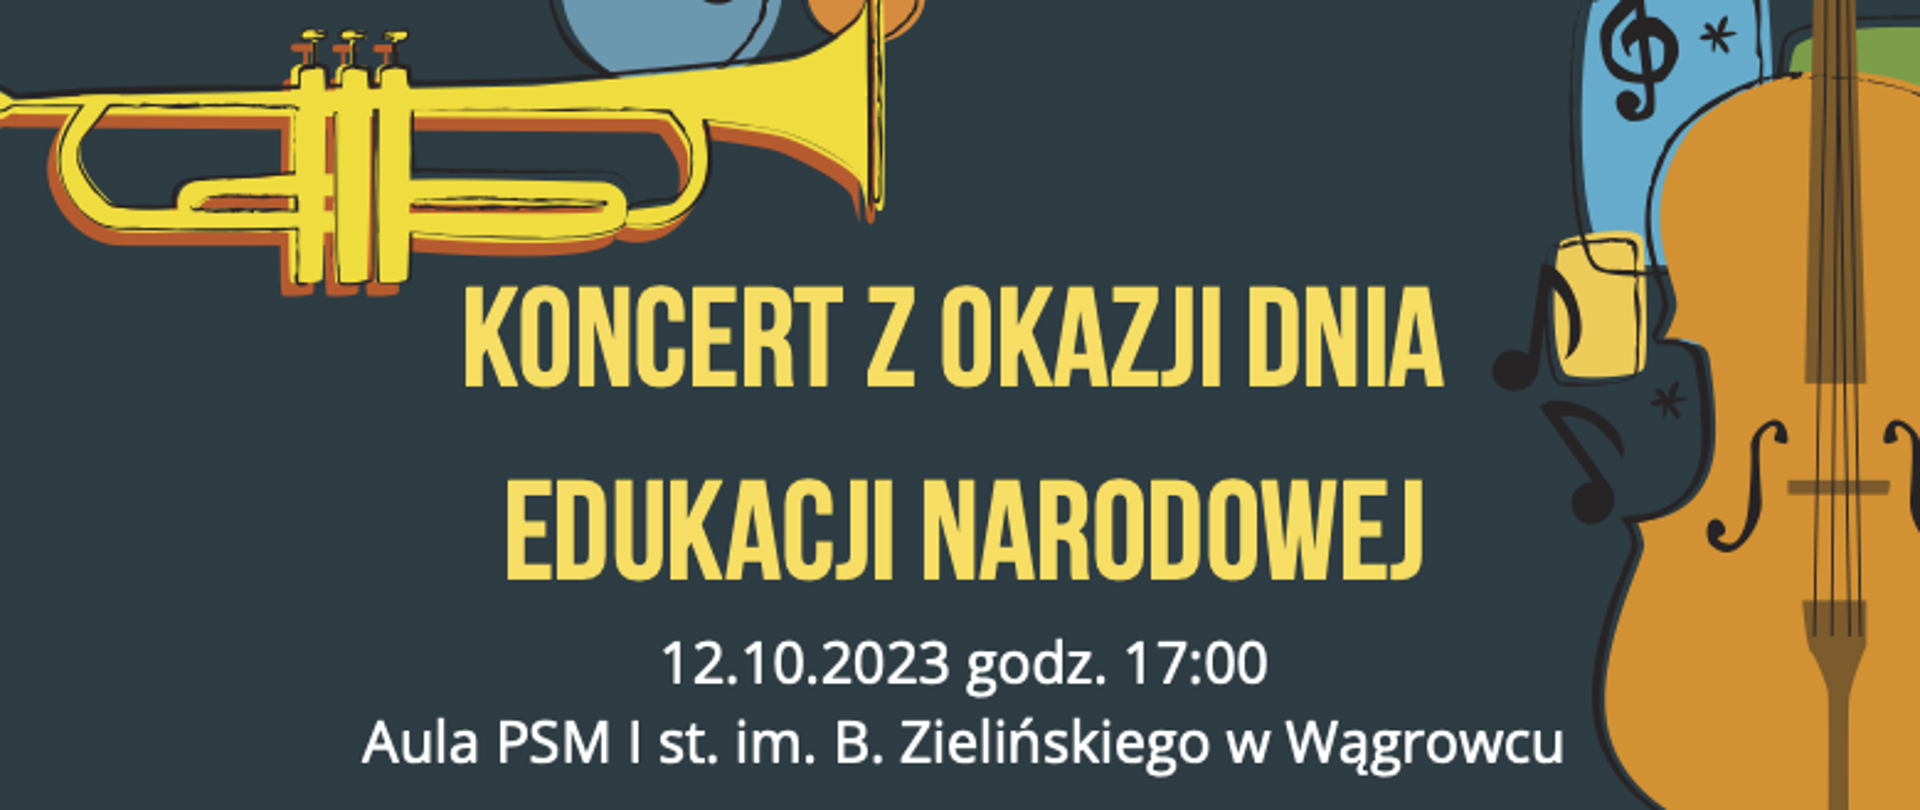 Na banerze reklamowym zapisane są informacje dotyczące koncert z okazji Dnia Edukacji Narodowej który odbędzie się w dniu 12.10.2023r o godz. 17:00